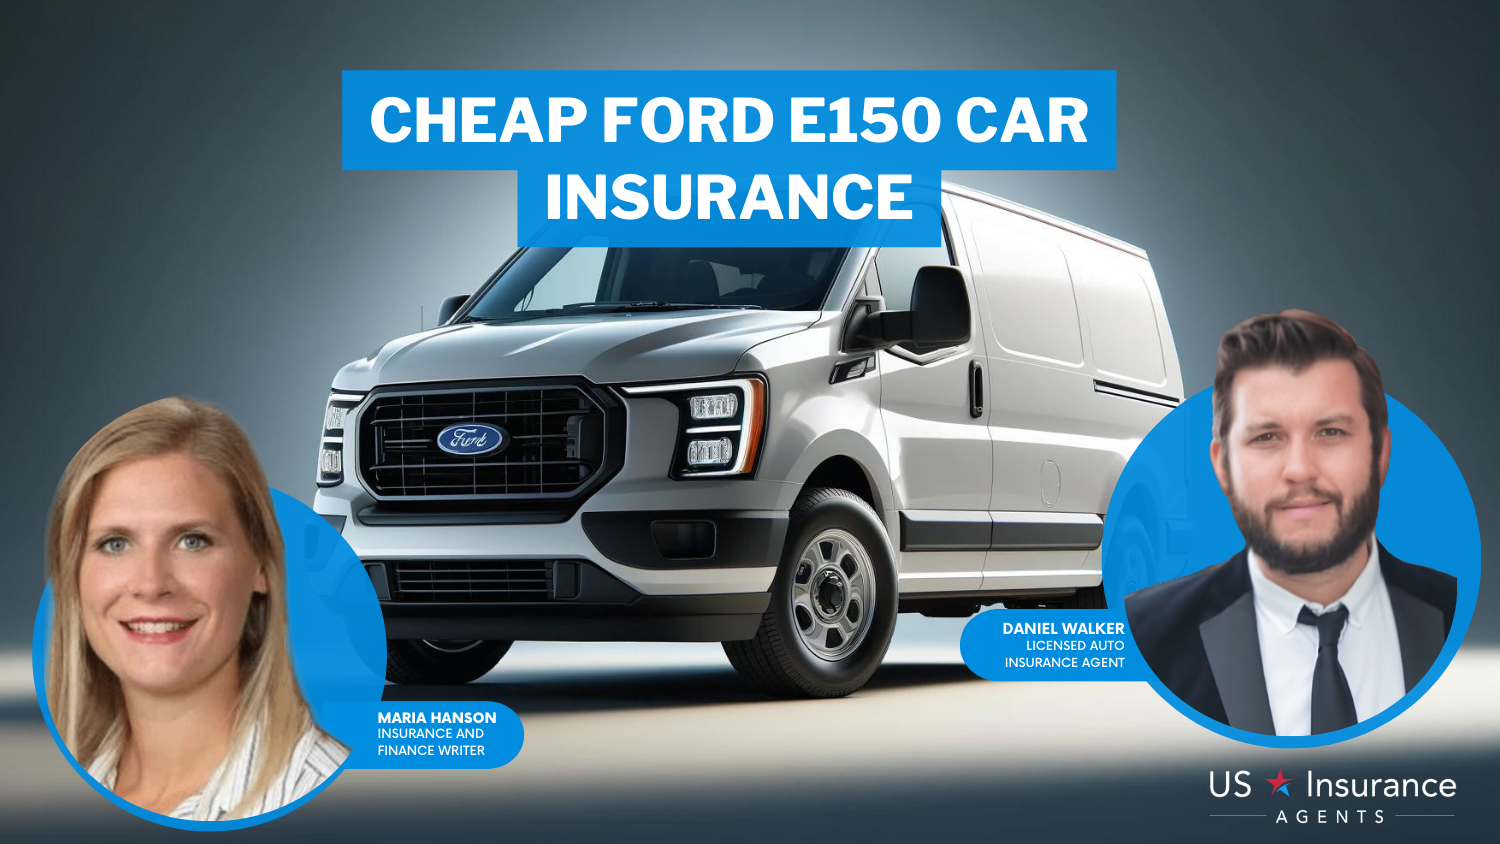 Cheap Ford E150 Car Insurance: State Farm, Allstate, and Progressive